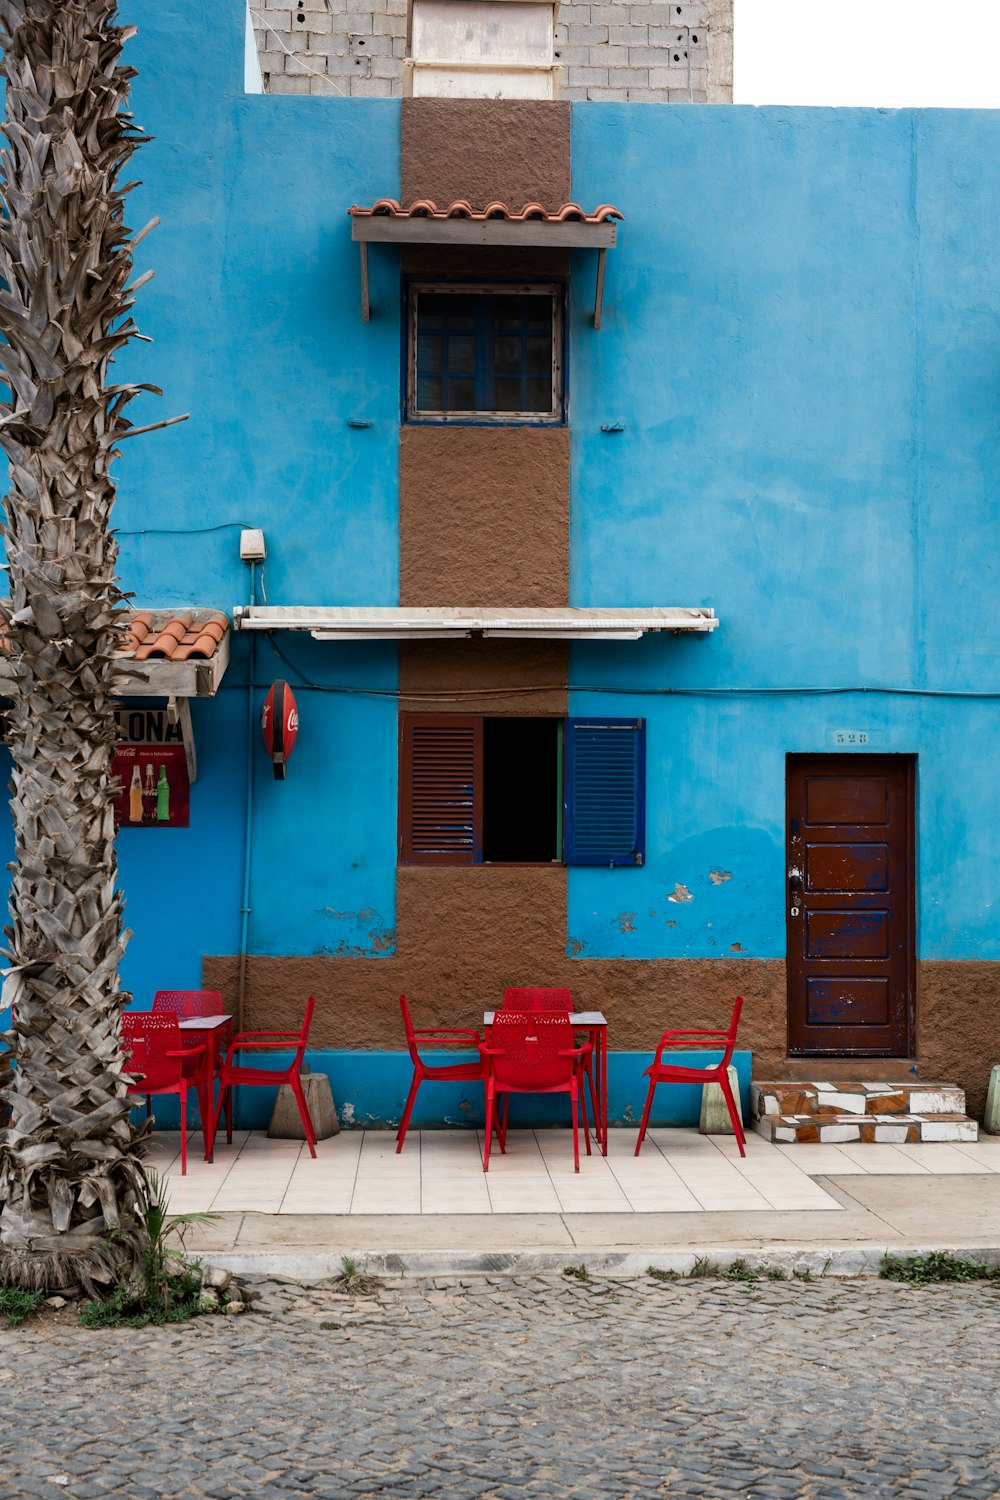 Sillas y mesas de plástico rojo cerca de un edificio de hormigón azul